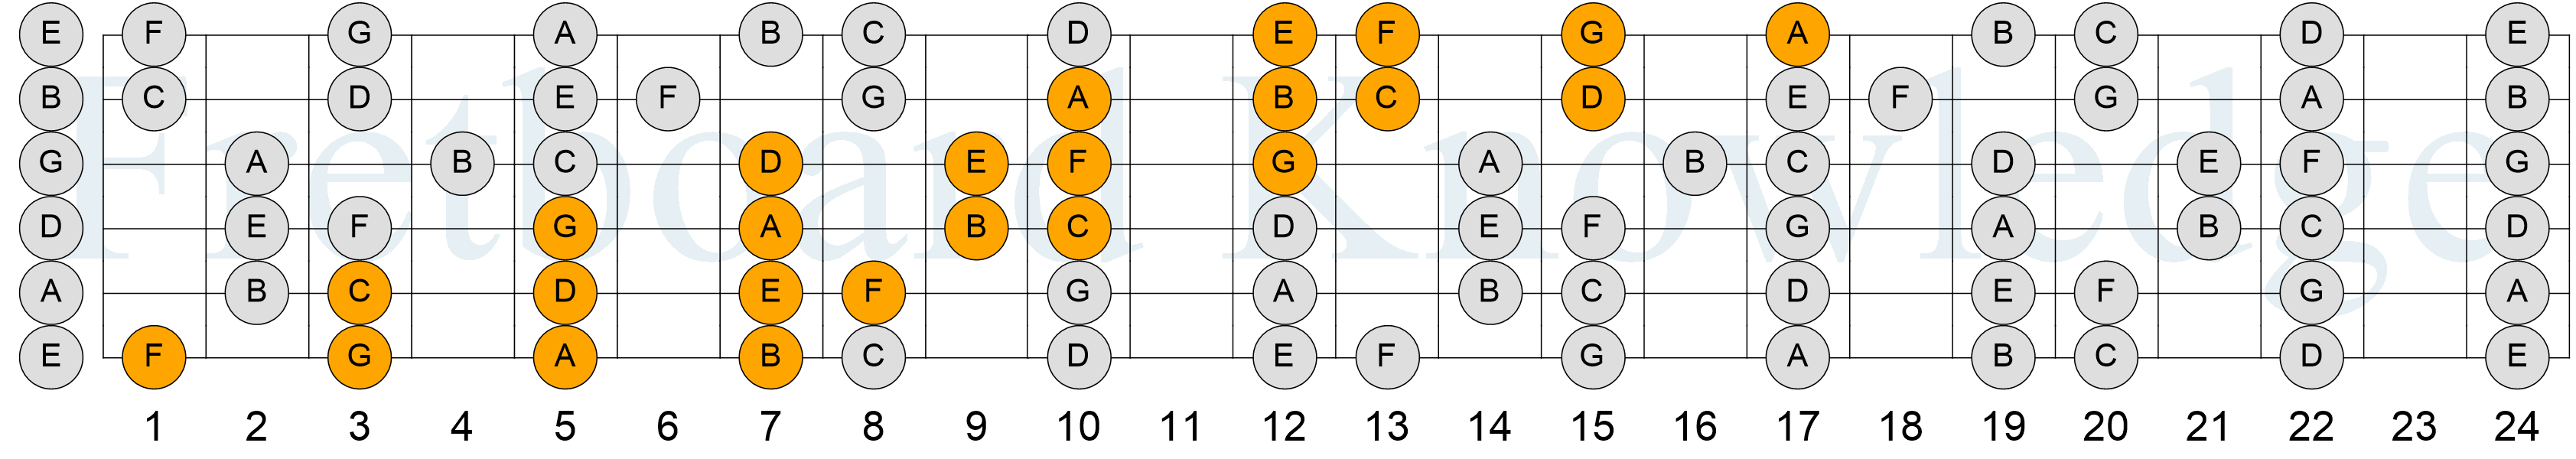 C Major Scale - 4NPS - Pattern 2